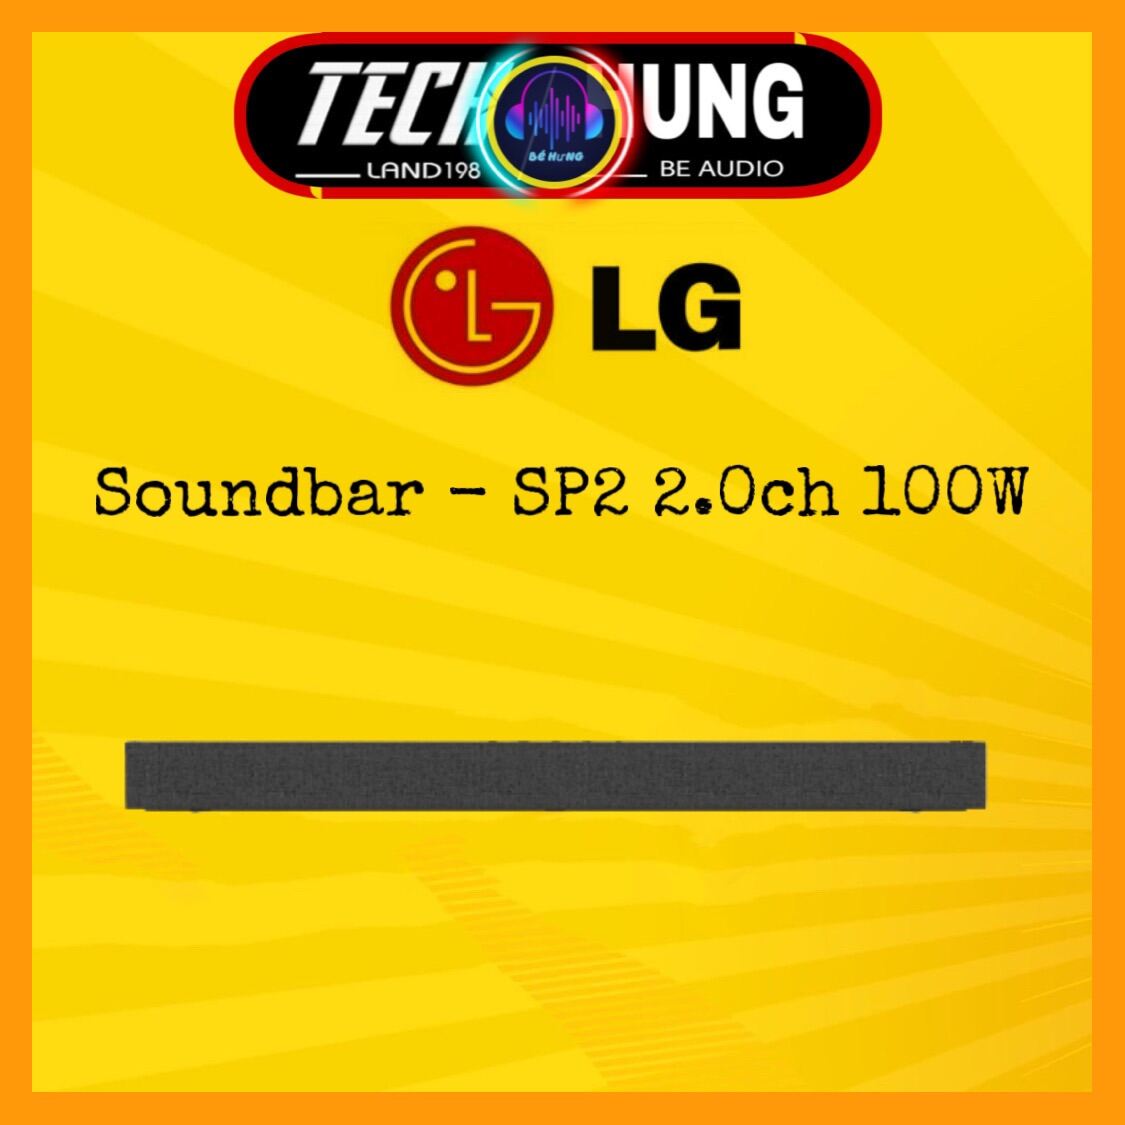 Loa thanh LG Soundbar SP2 2.1ch 100w - Hàng chính hãng 100% bảo hành 12 tháng